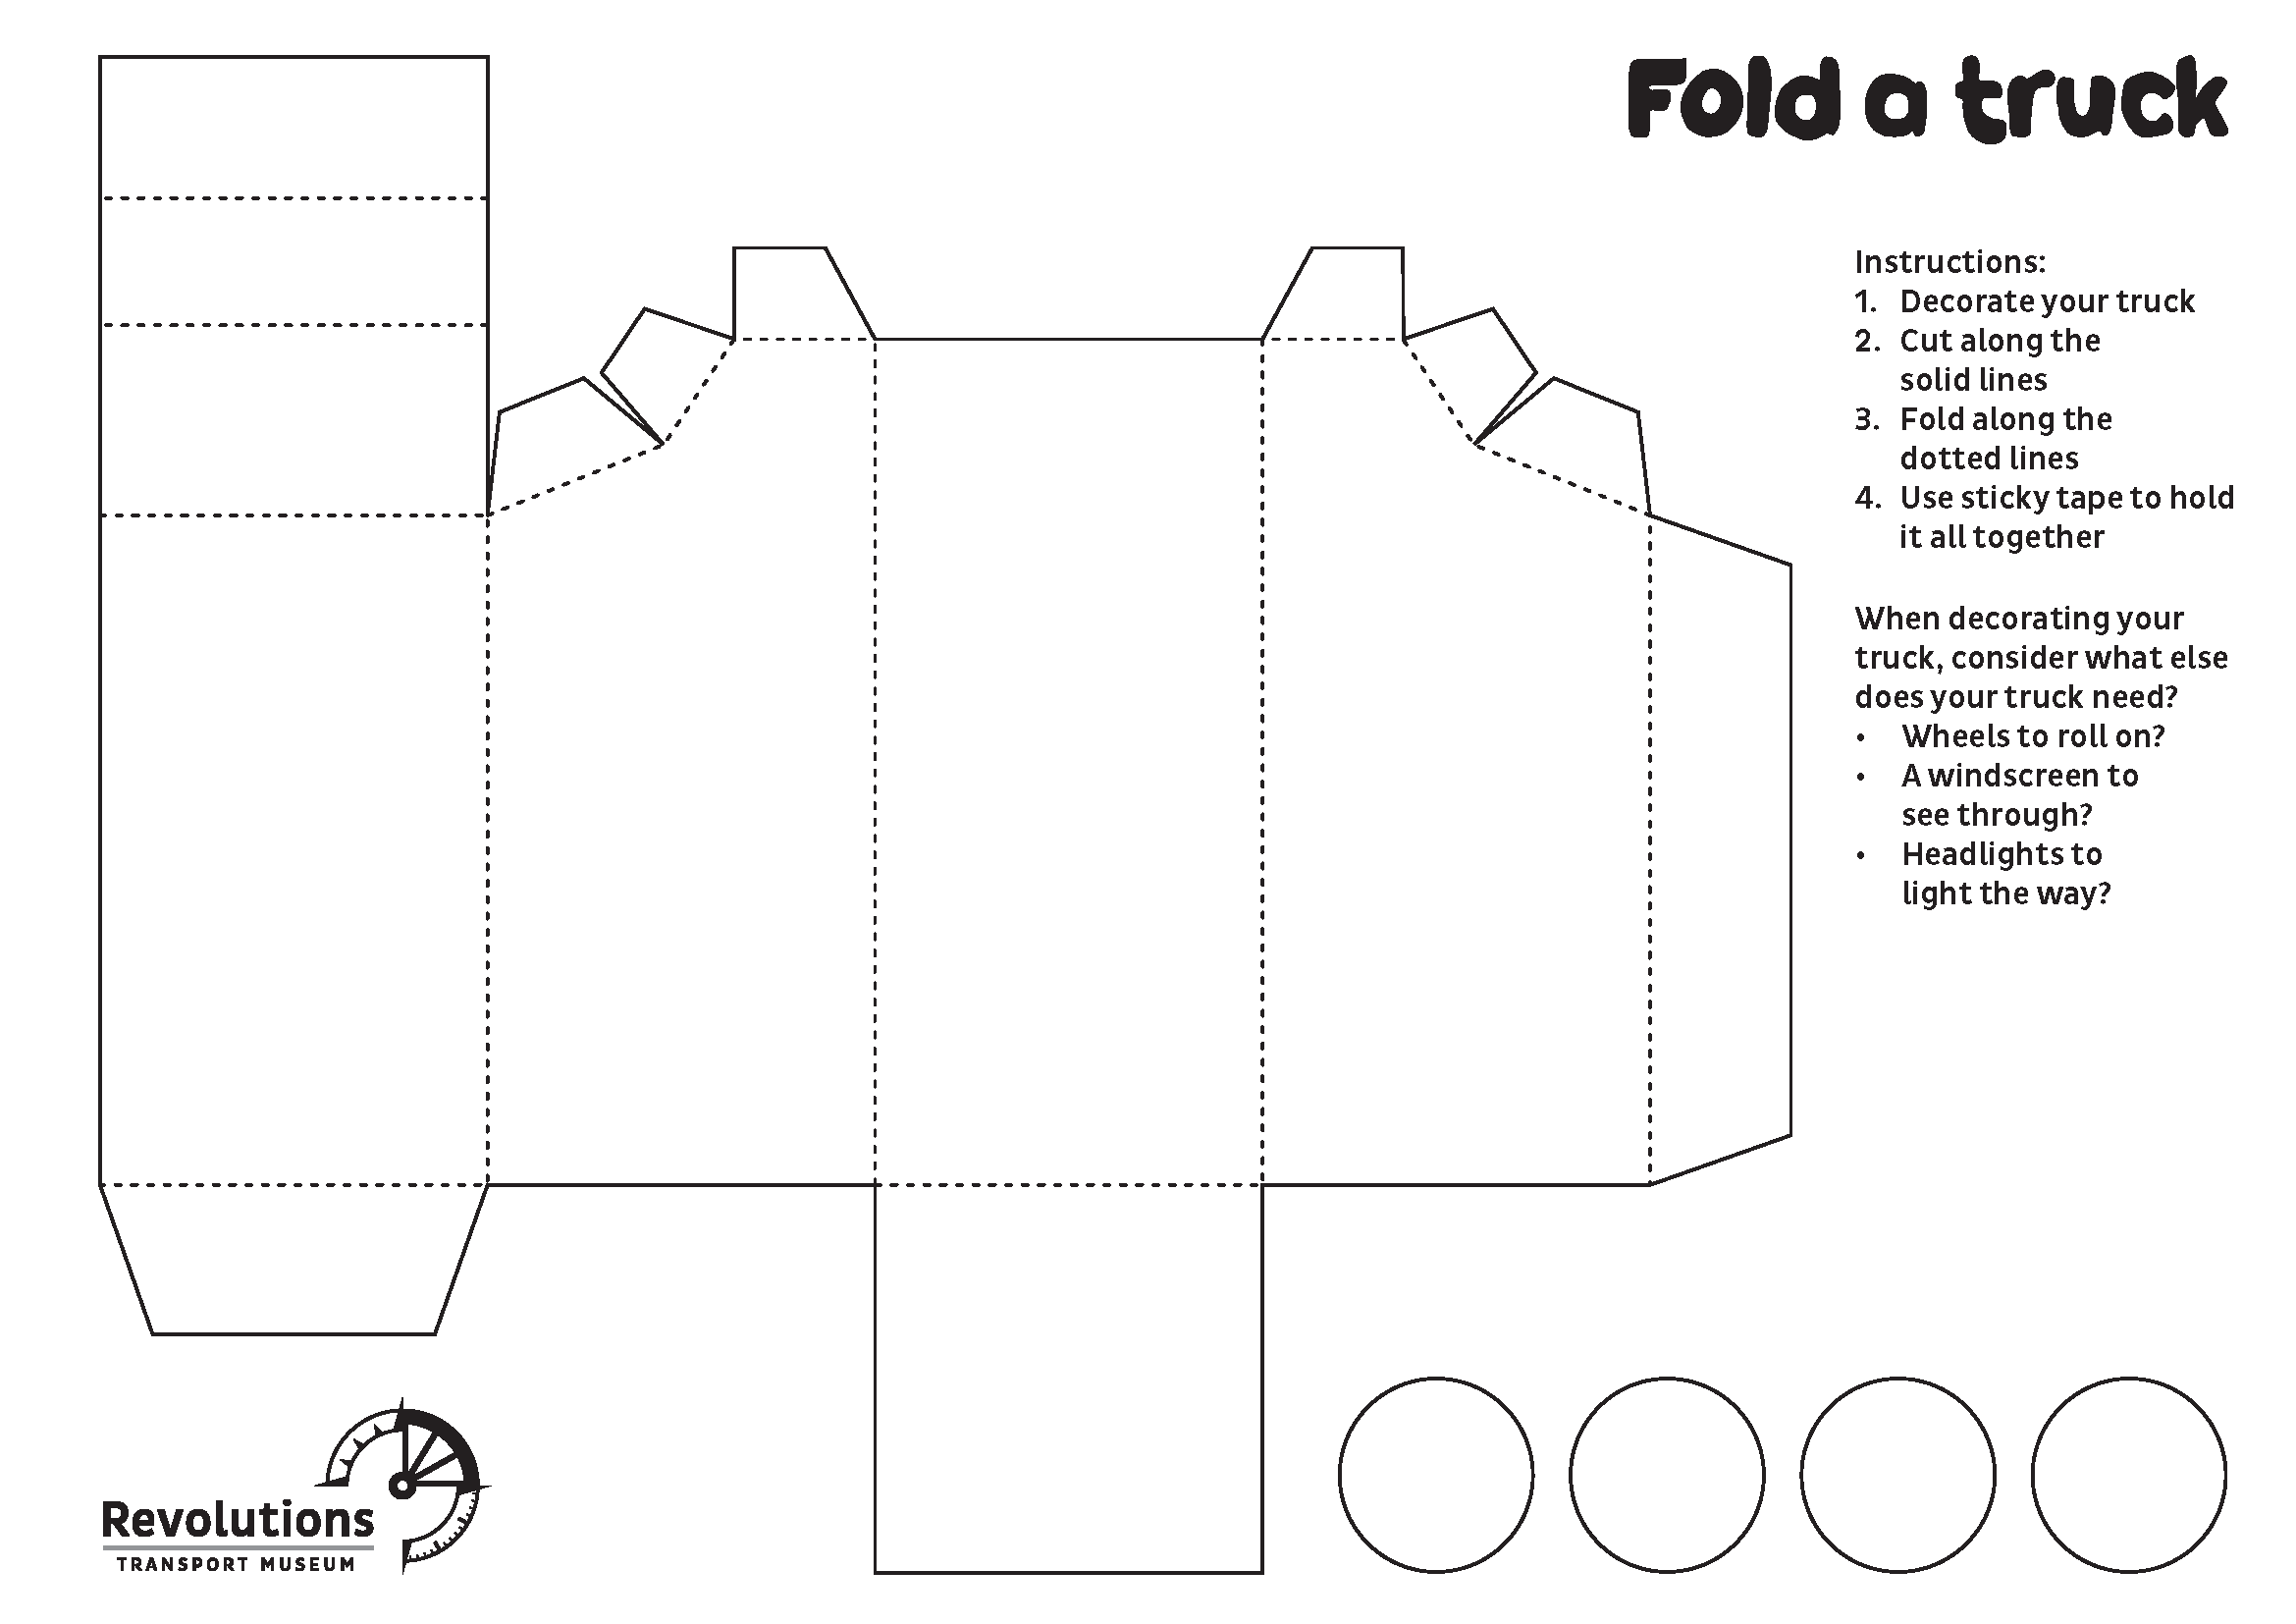 Fold-a-truck activity sheet